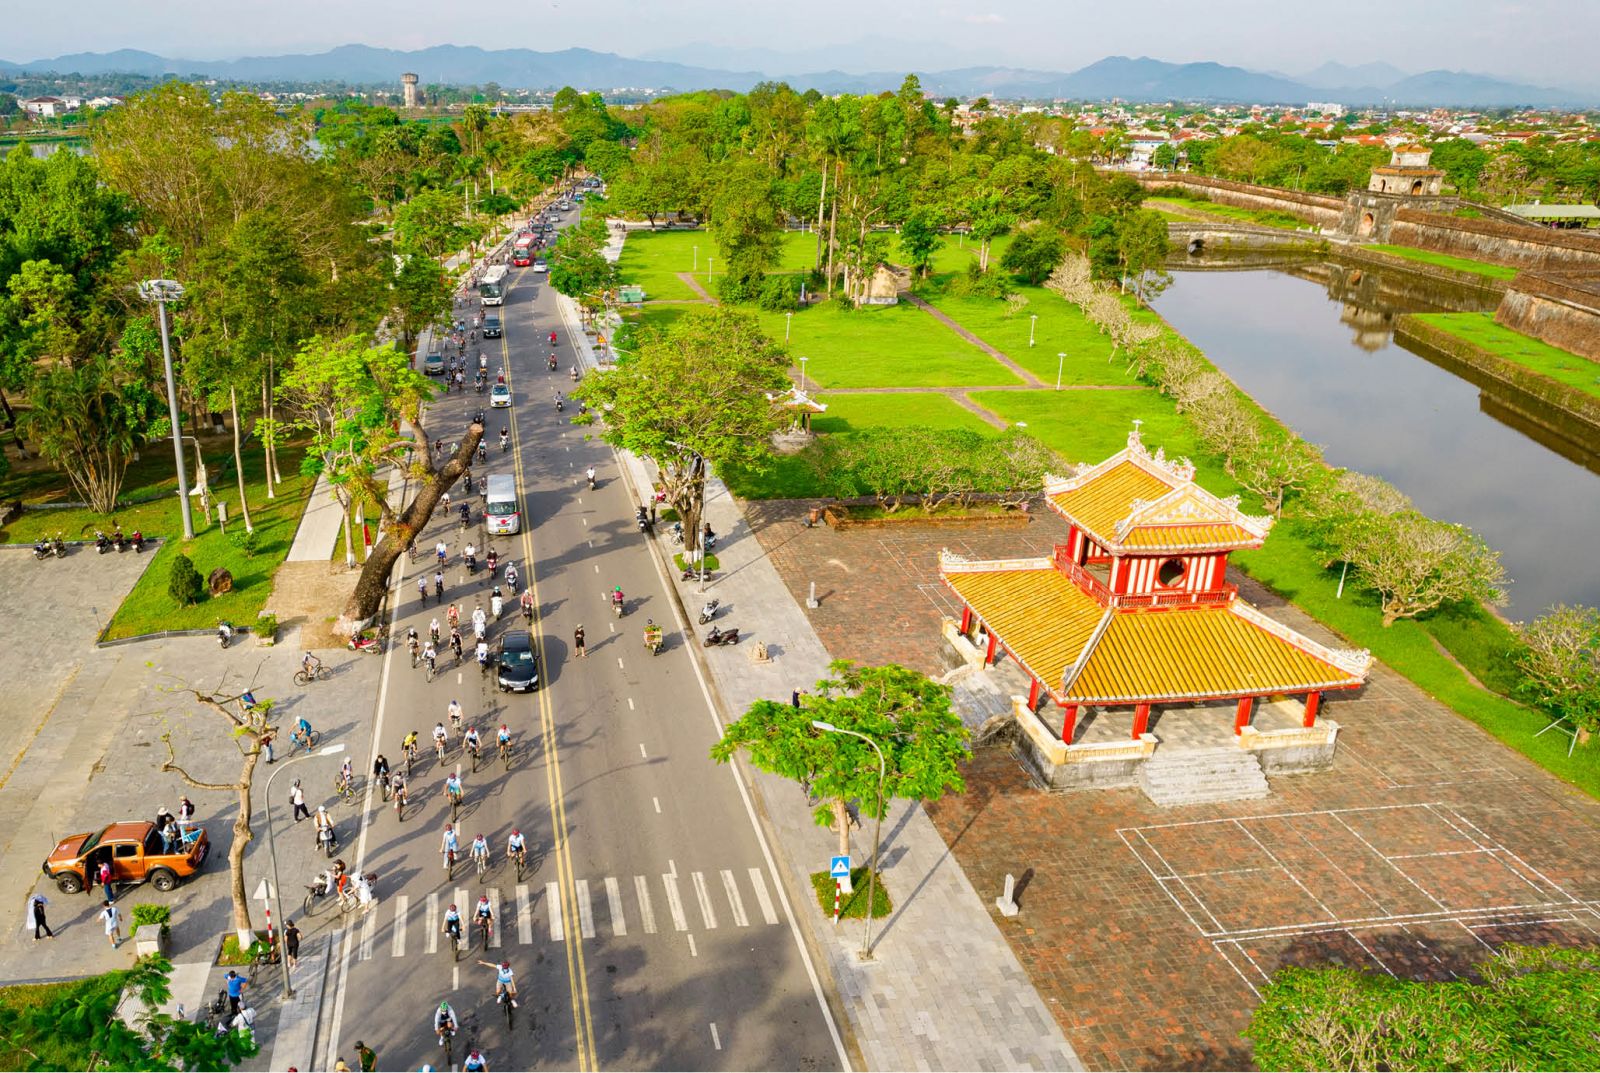 Gắn quy hoạch hệ thống du lịch Việt Nam với định hướng phát triển du lịch Cố đô